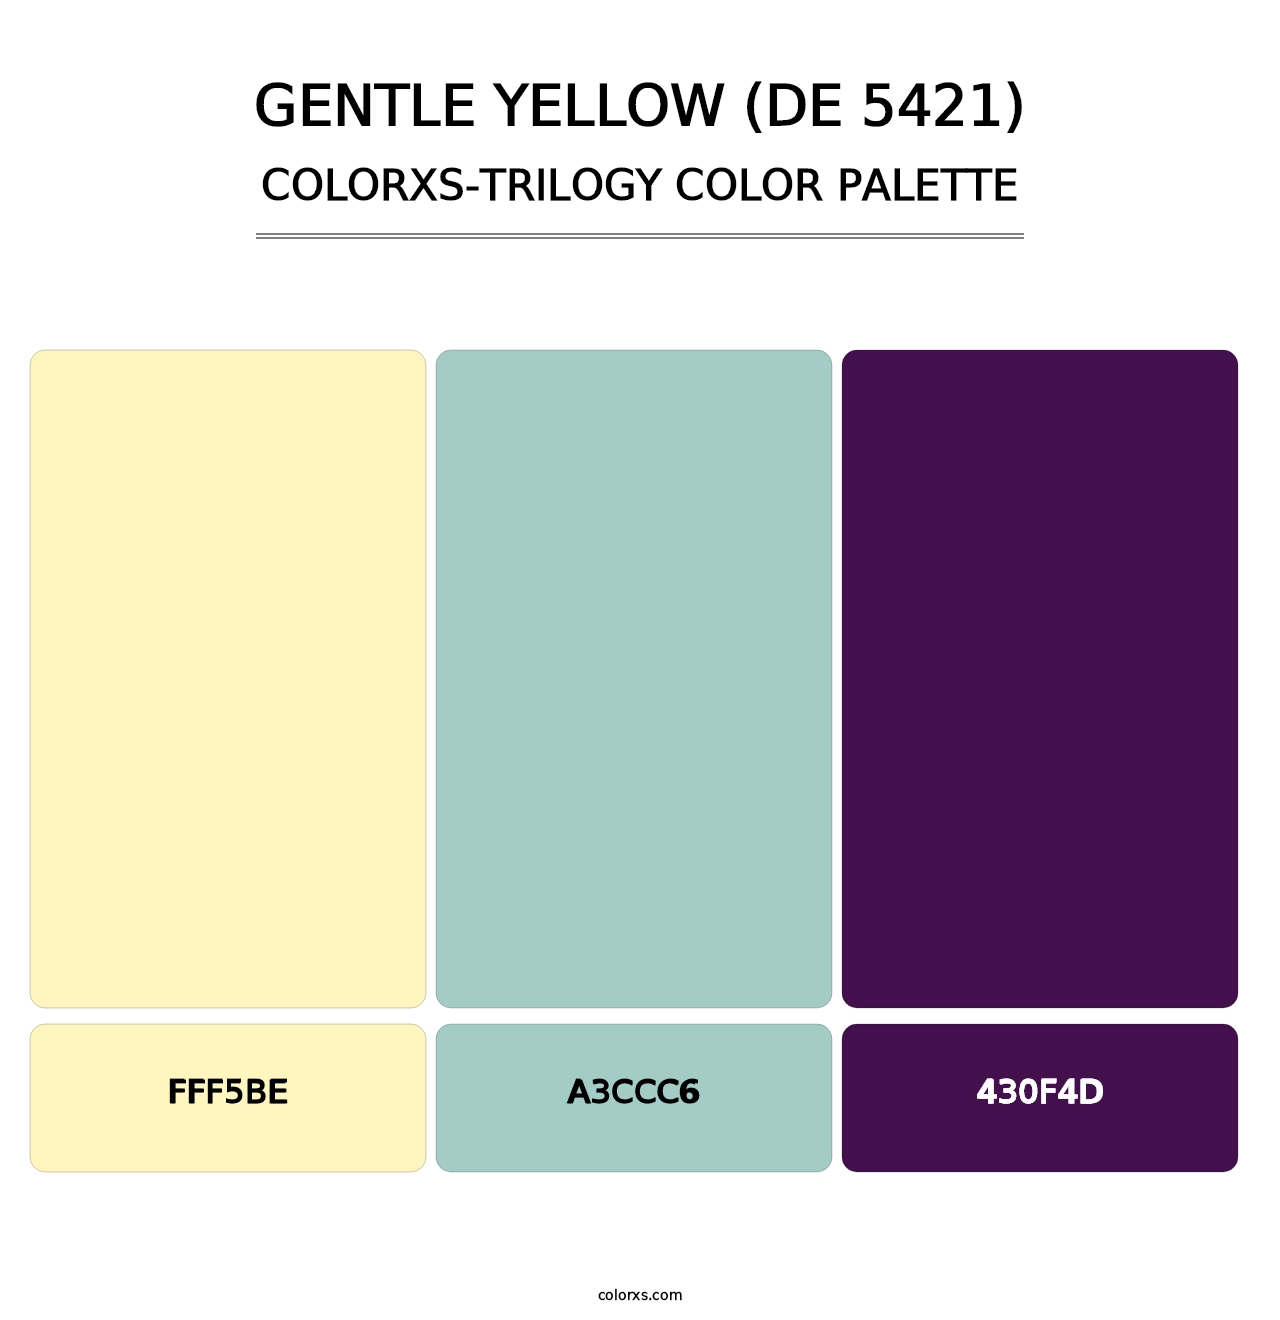 Gentle Yellow (DE 5421) - Colorxs Trilogy Palette